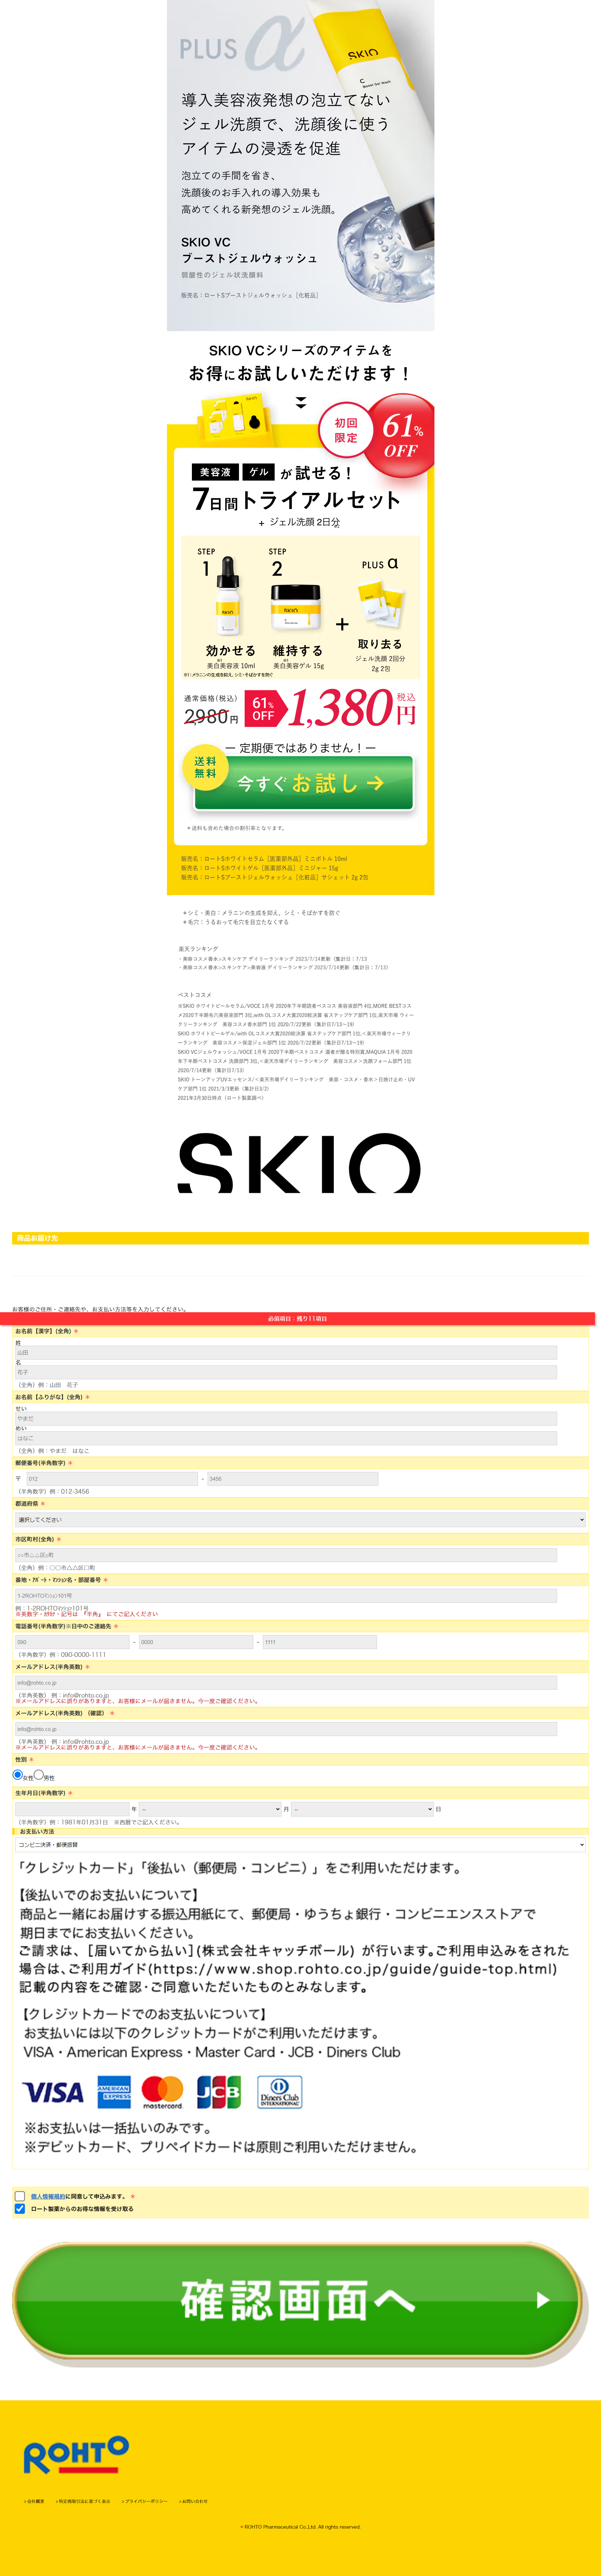 SKIO広告LP_sp_2